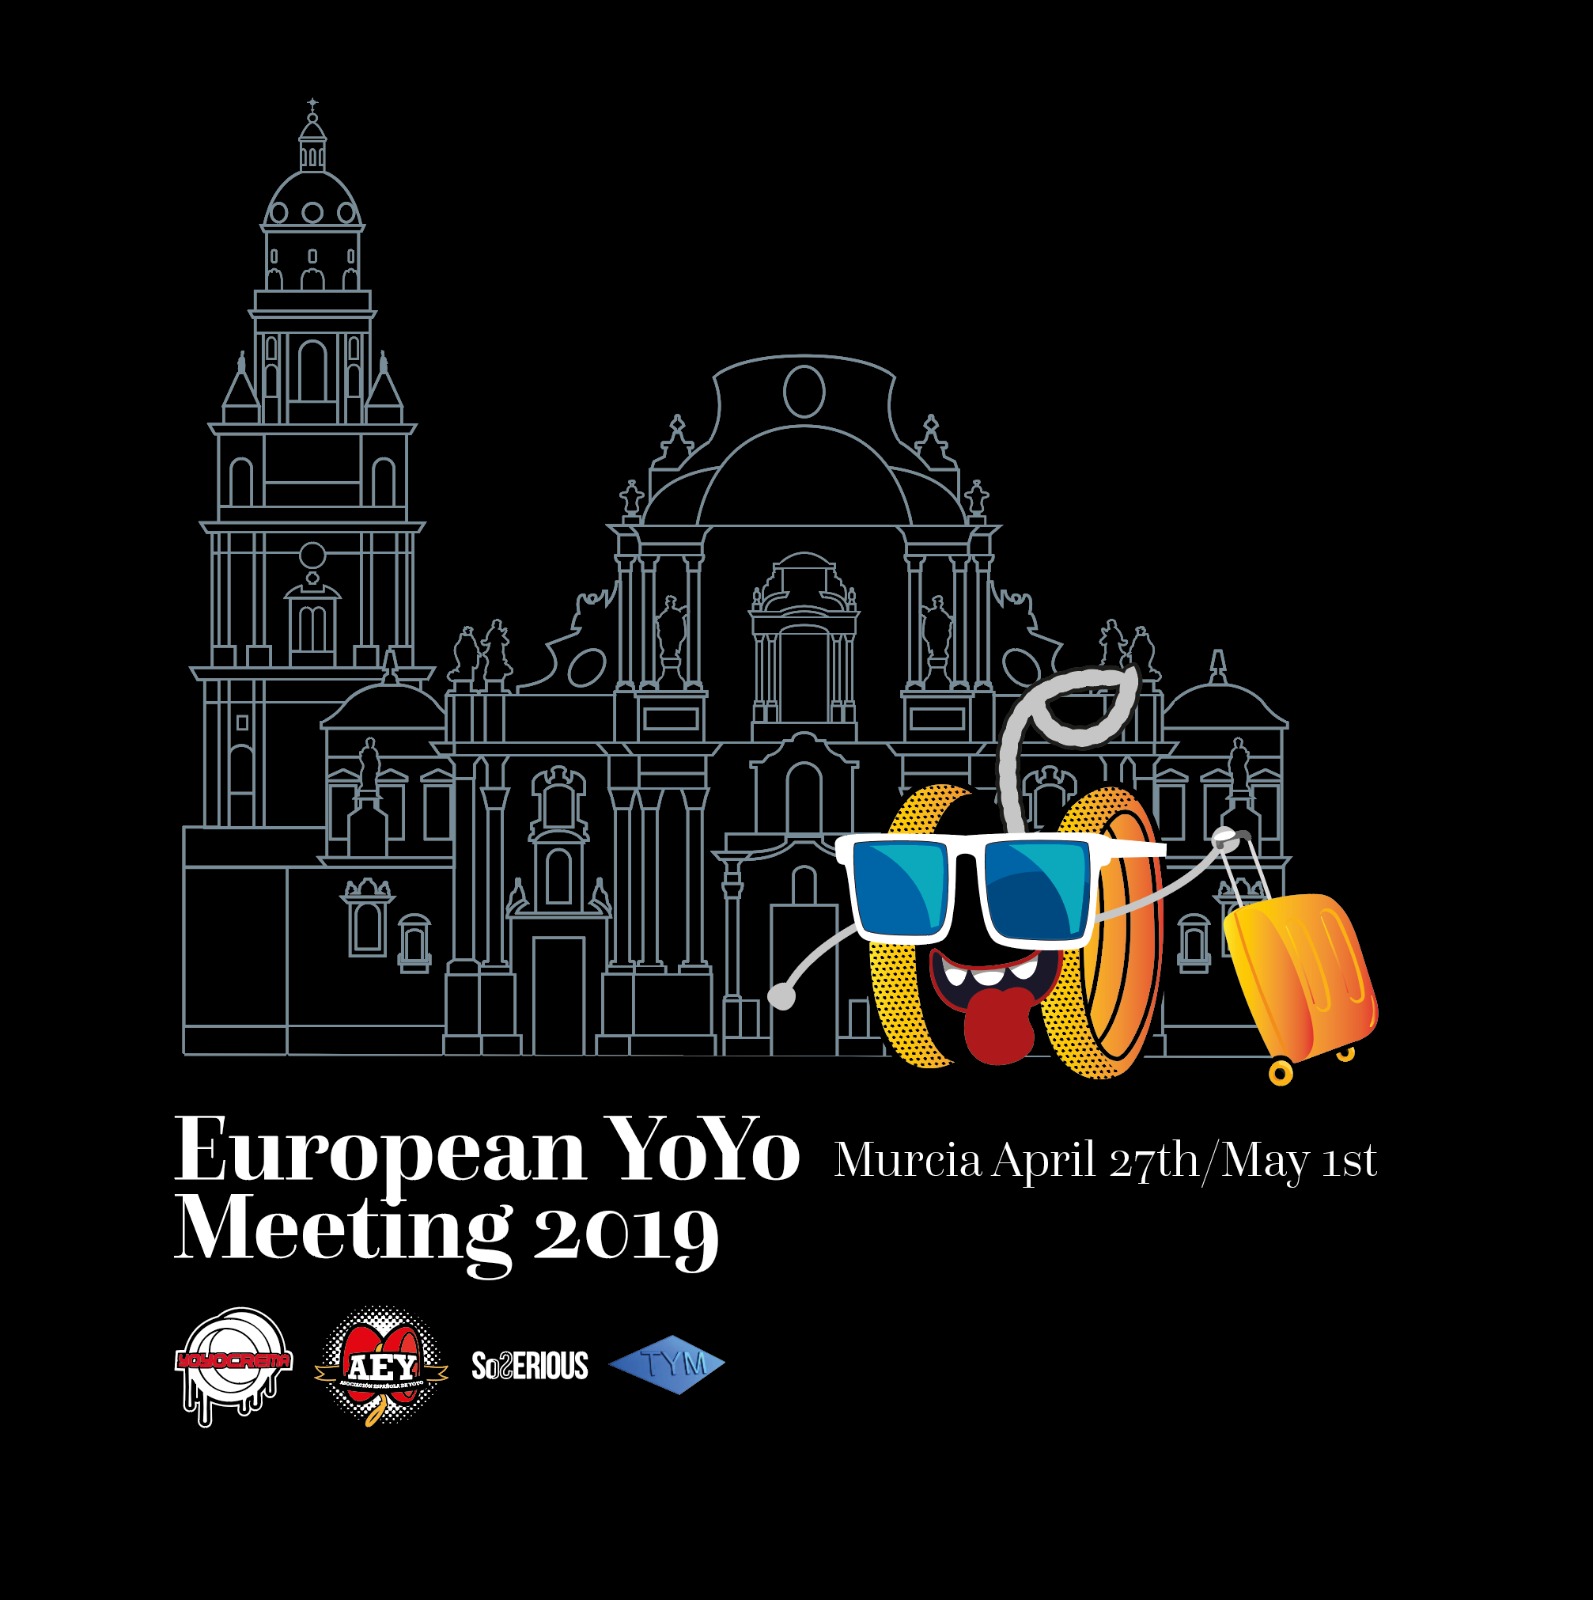 European Yo-Yo Meeting in Murcia